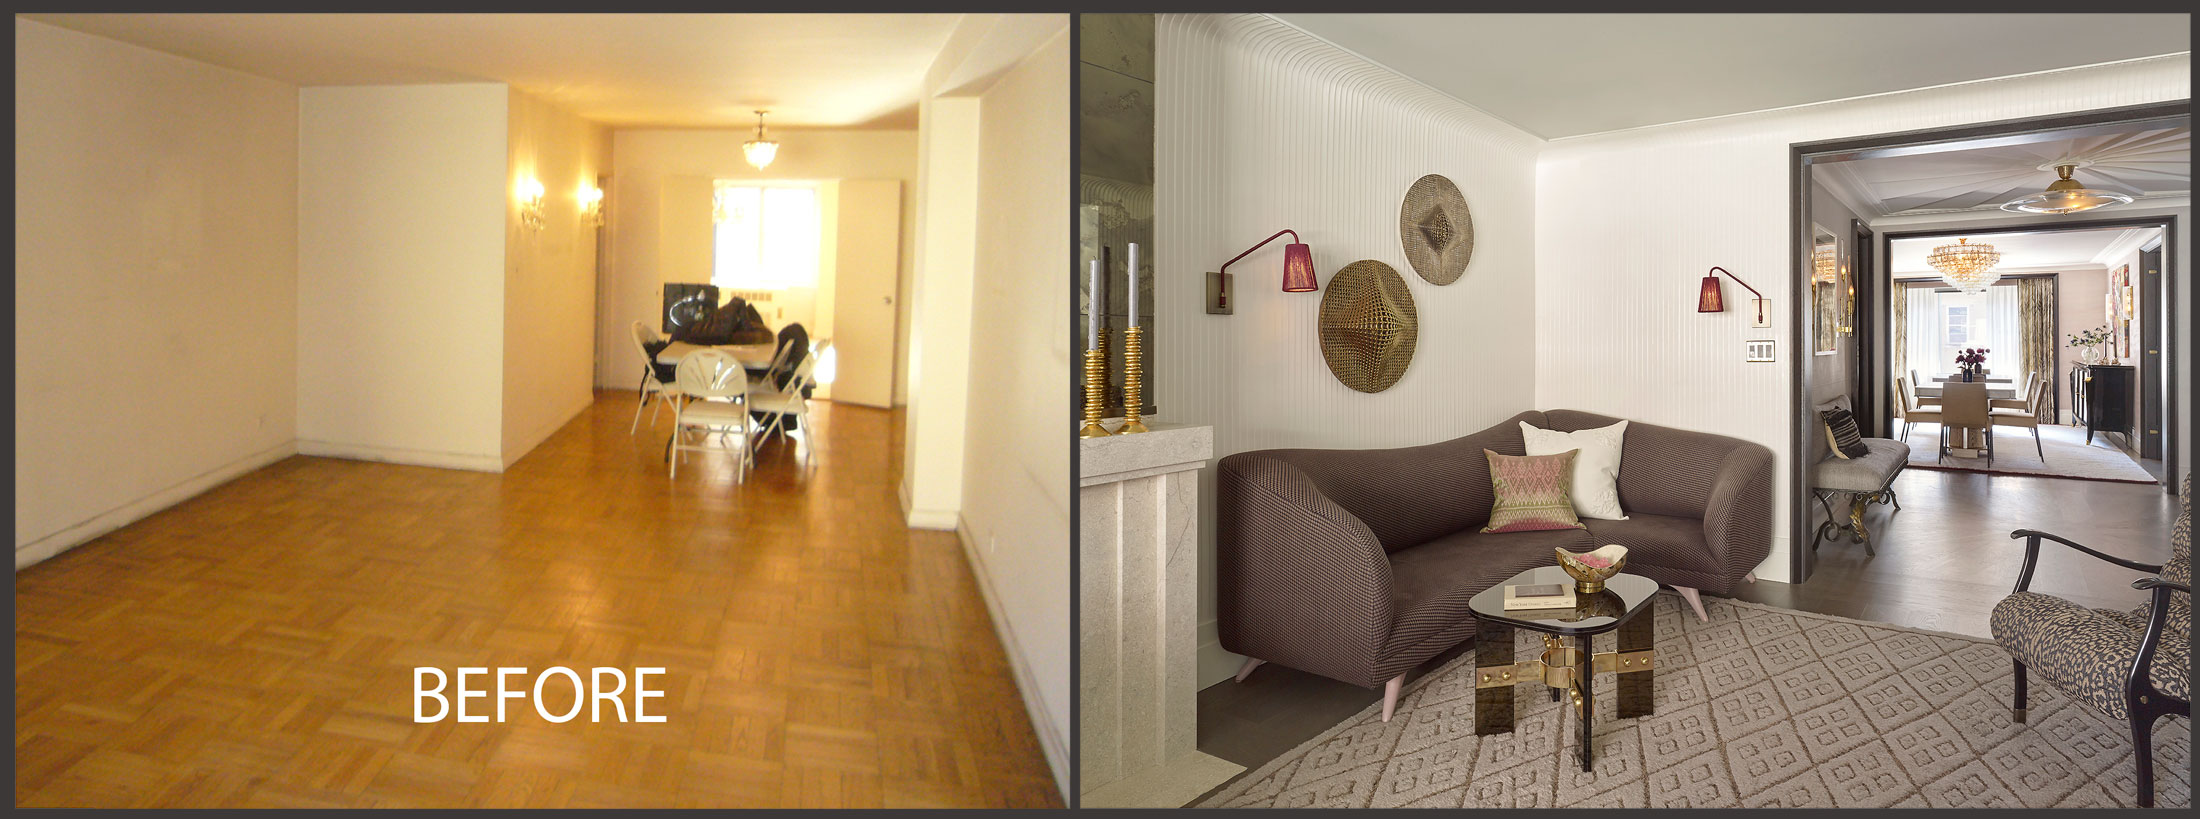 28-living-room-before-sbs.jpg